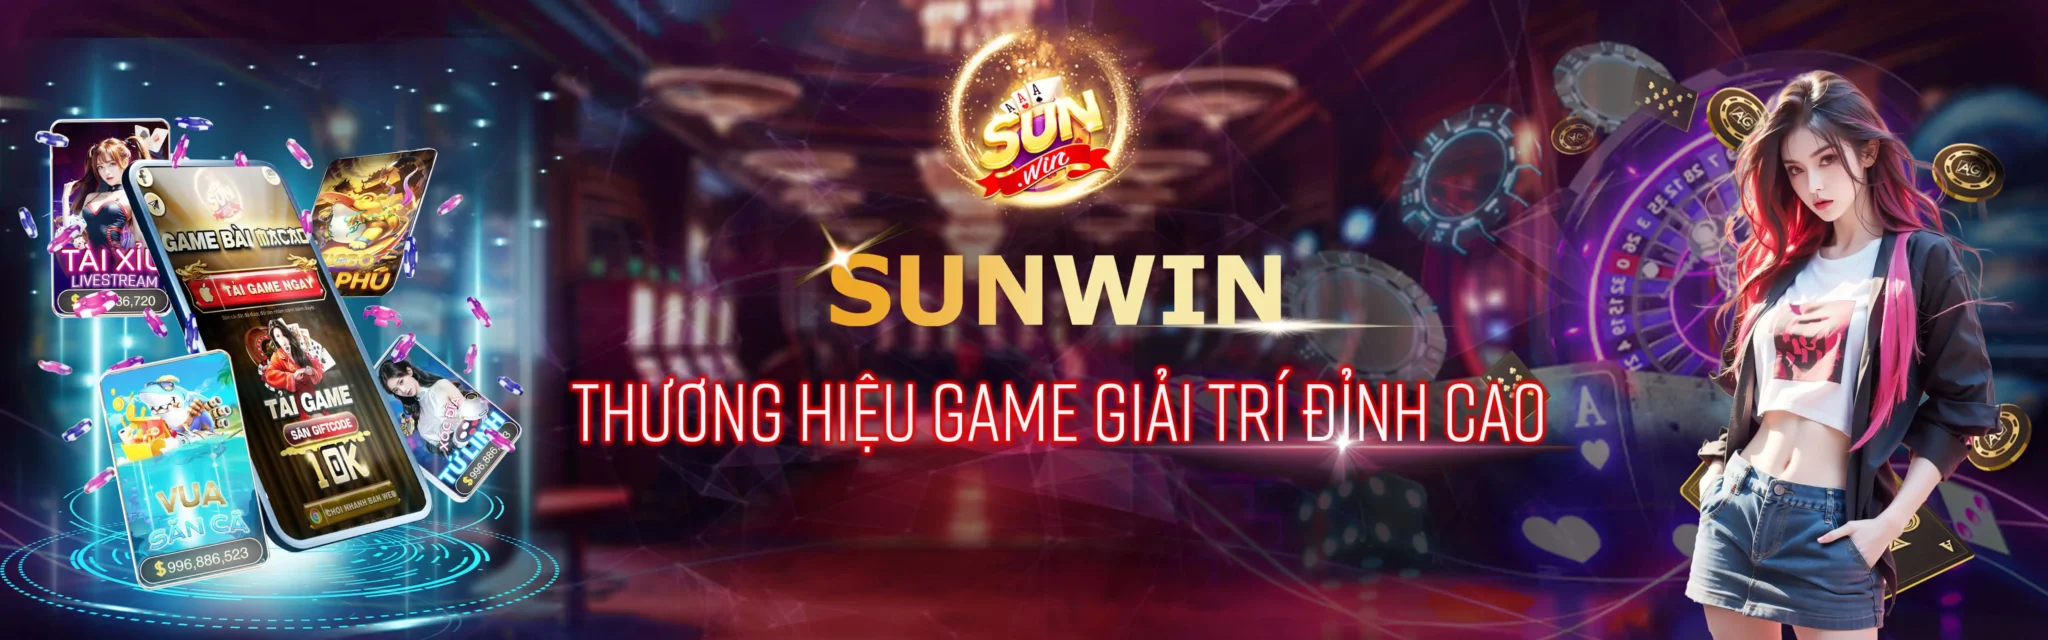 sunwin banner 1